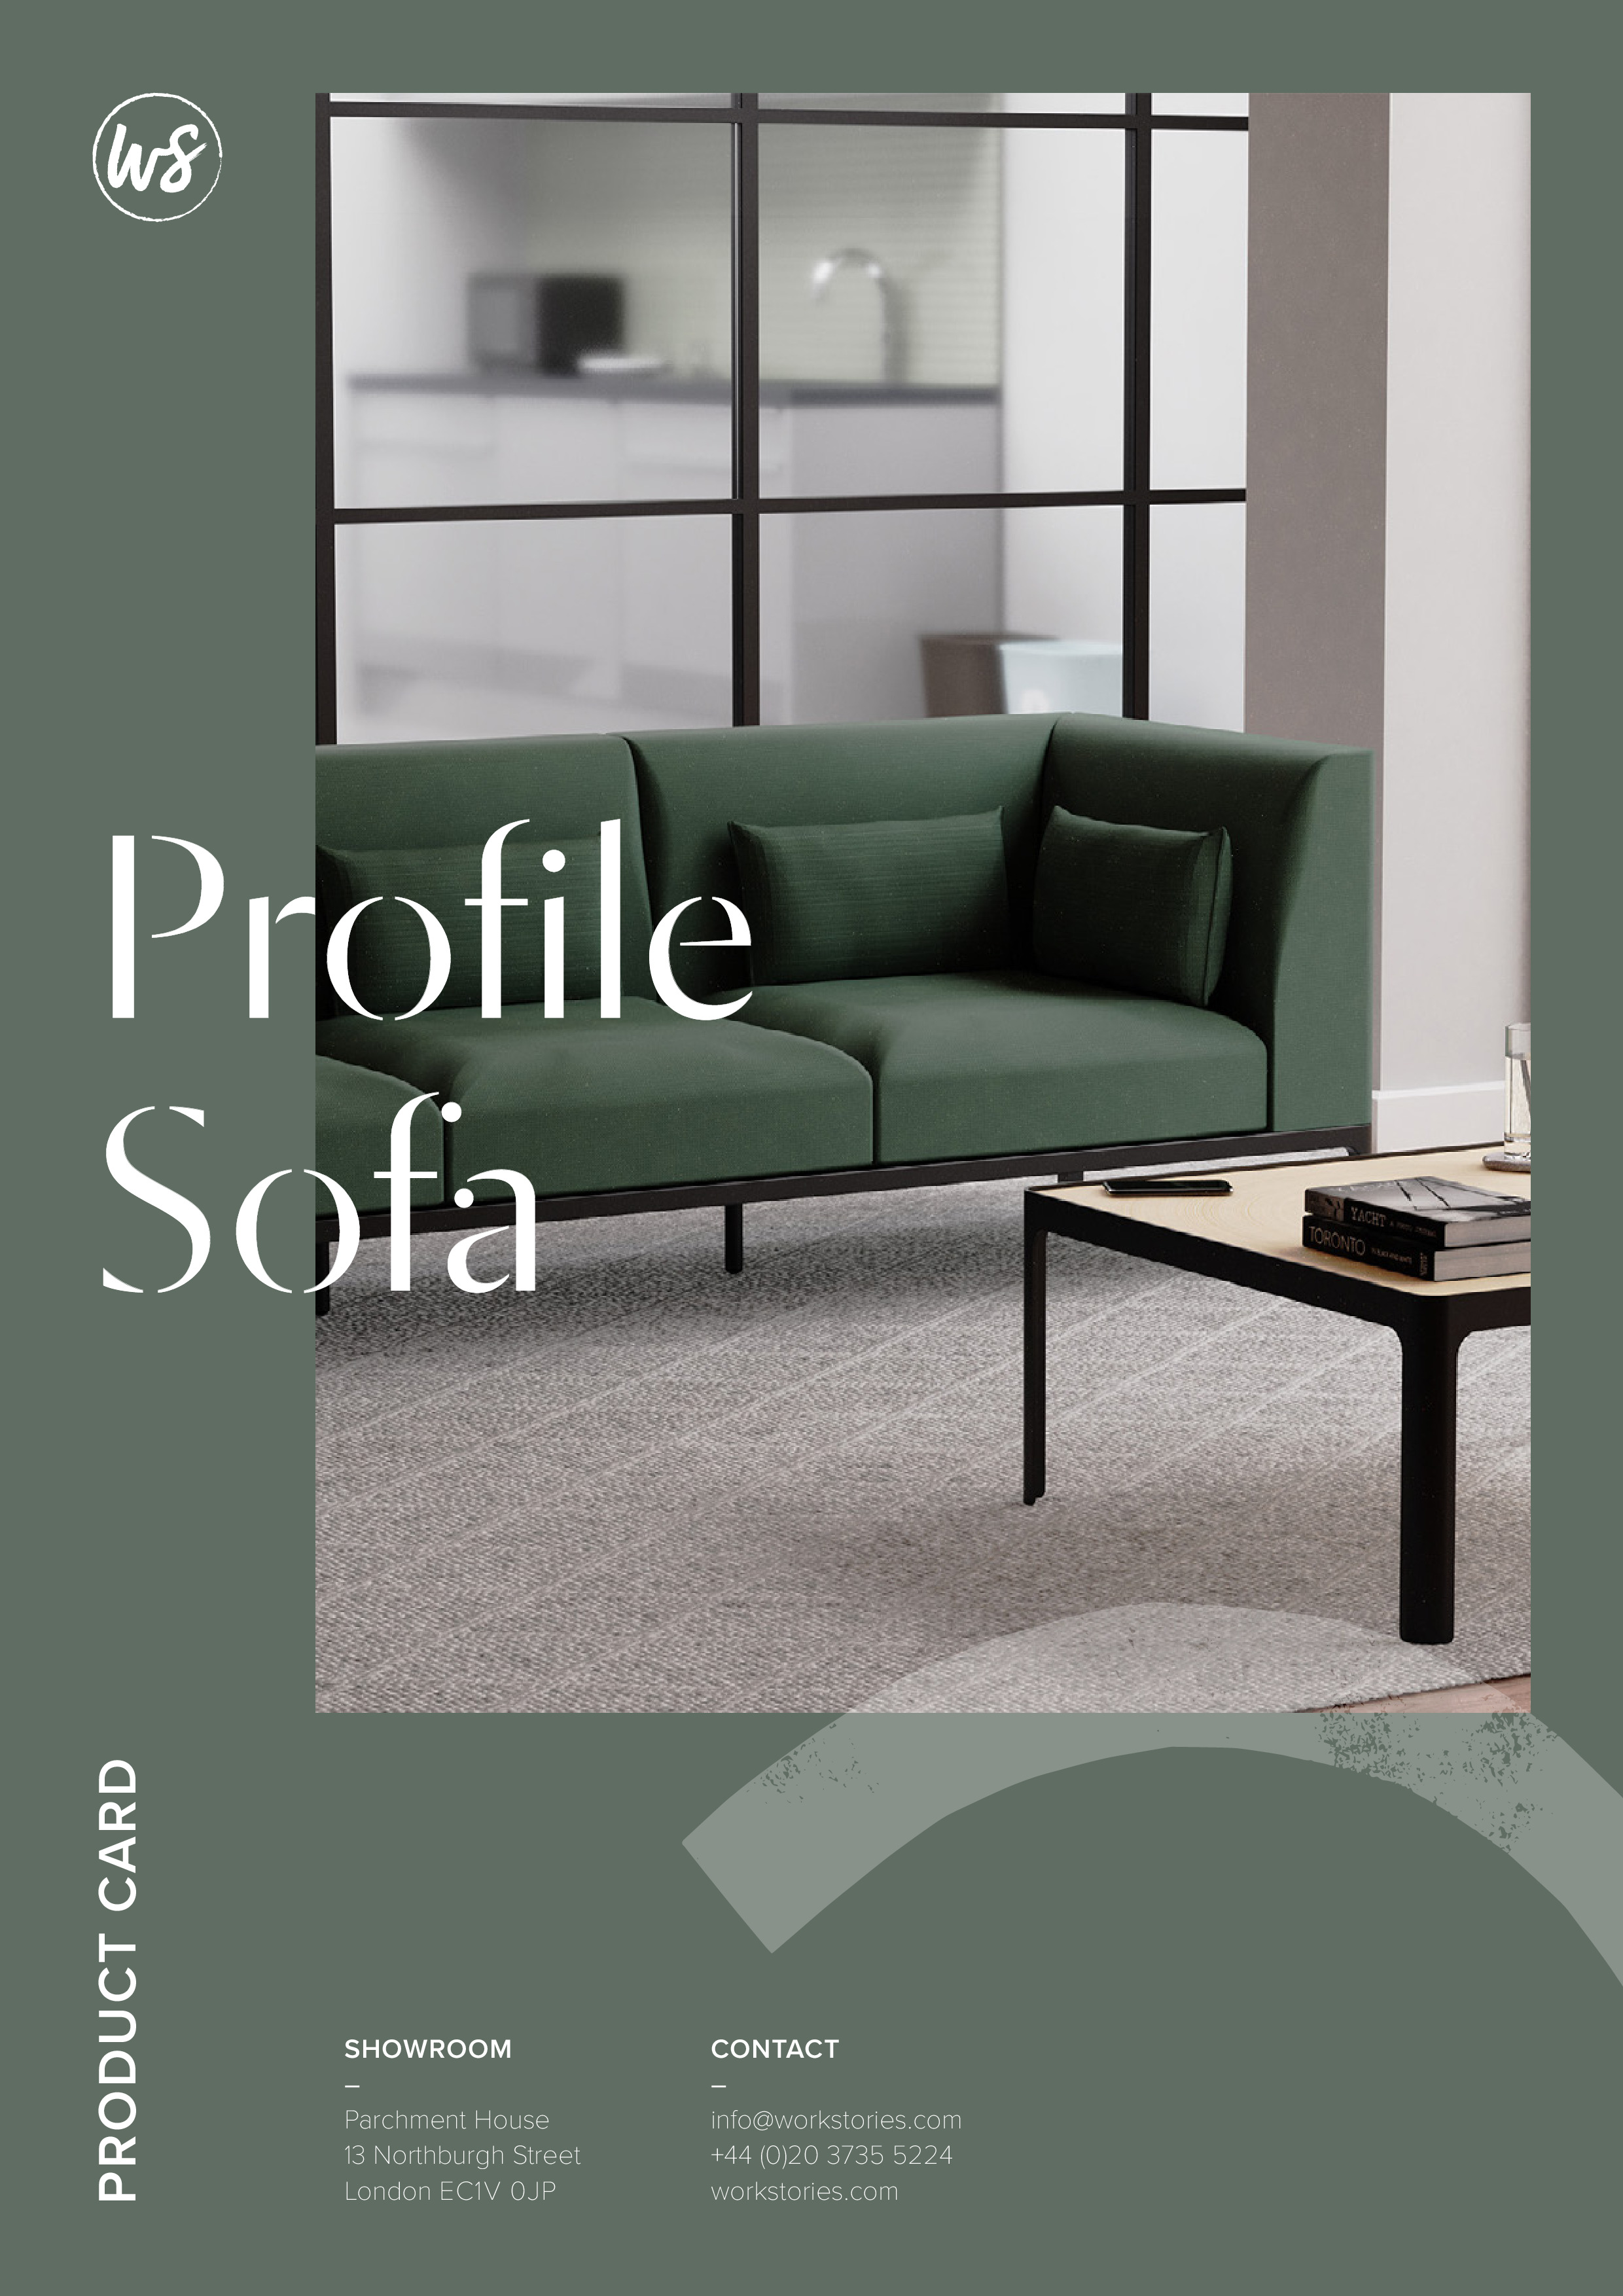 WS - Profile Sofa - Product card